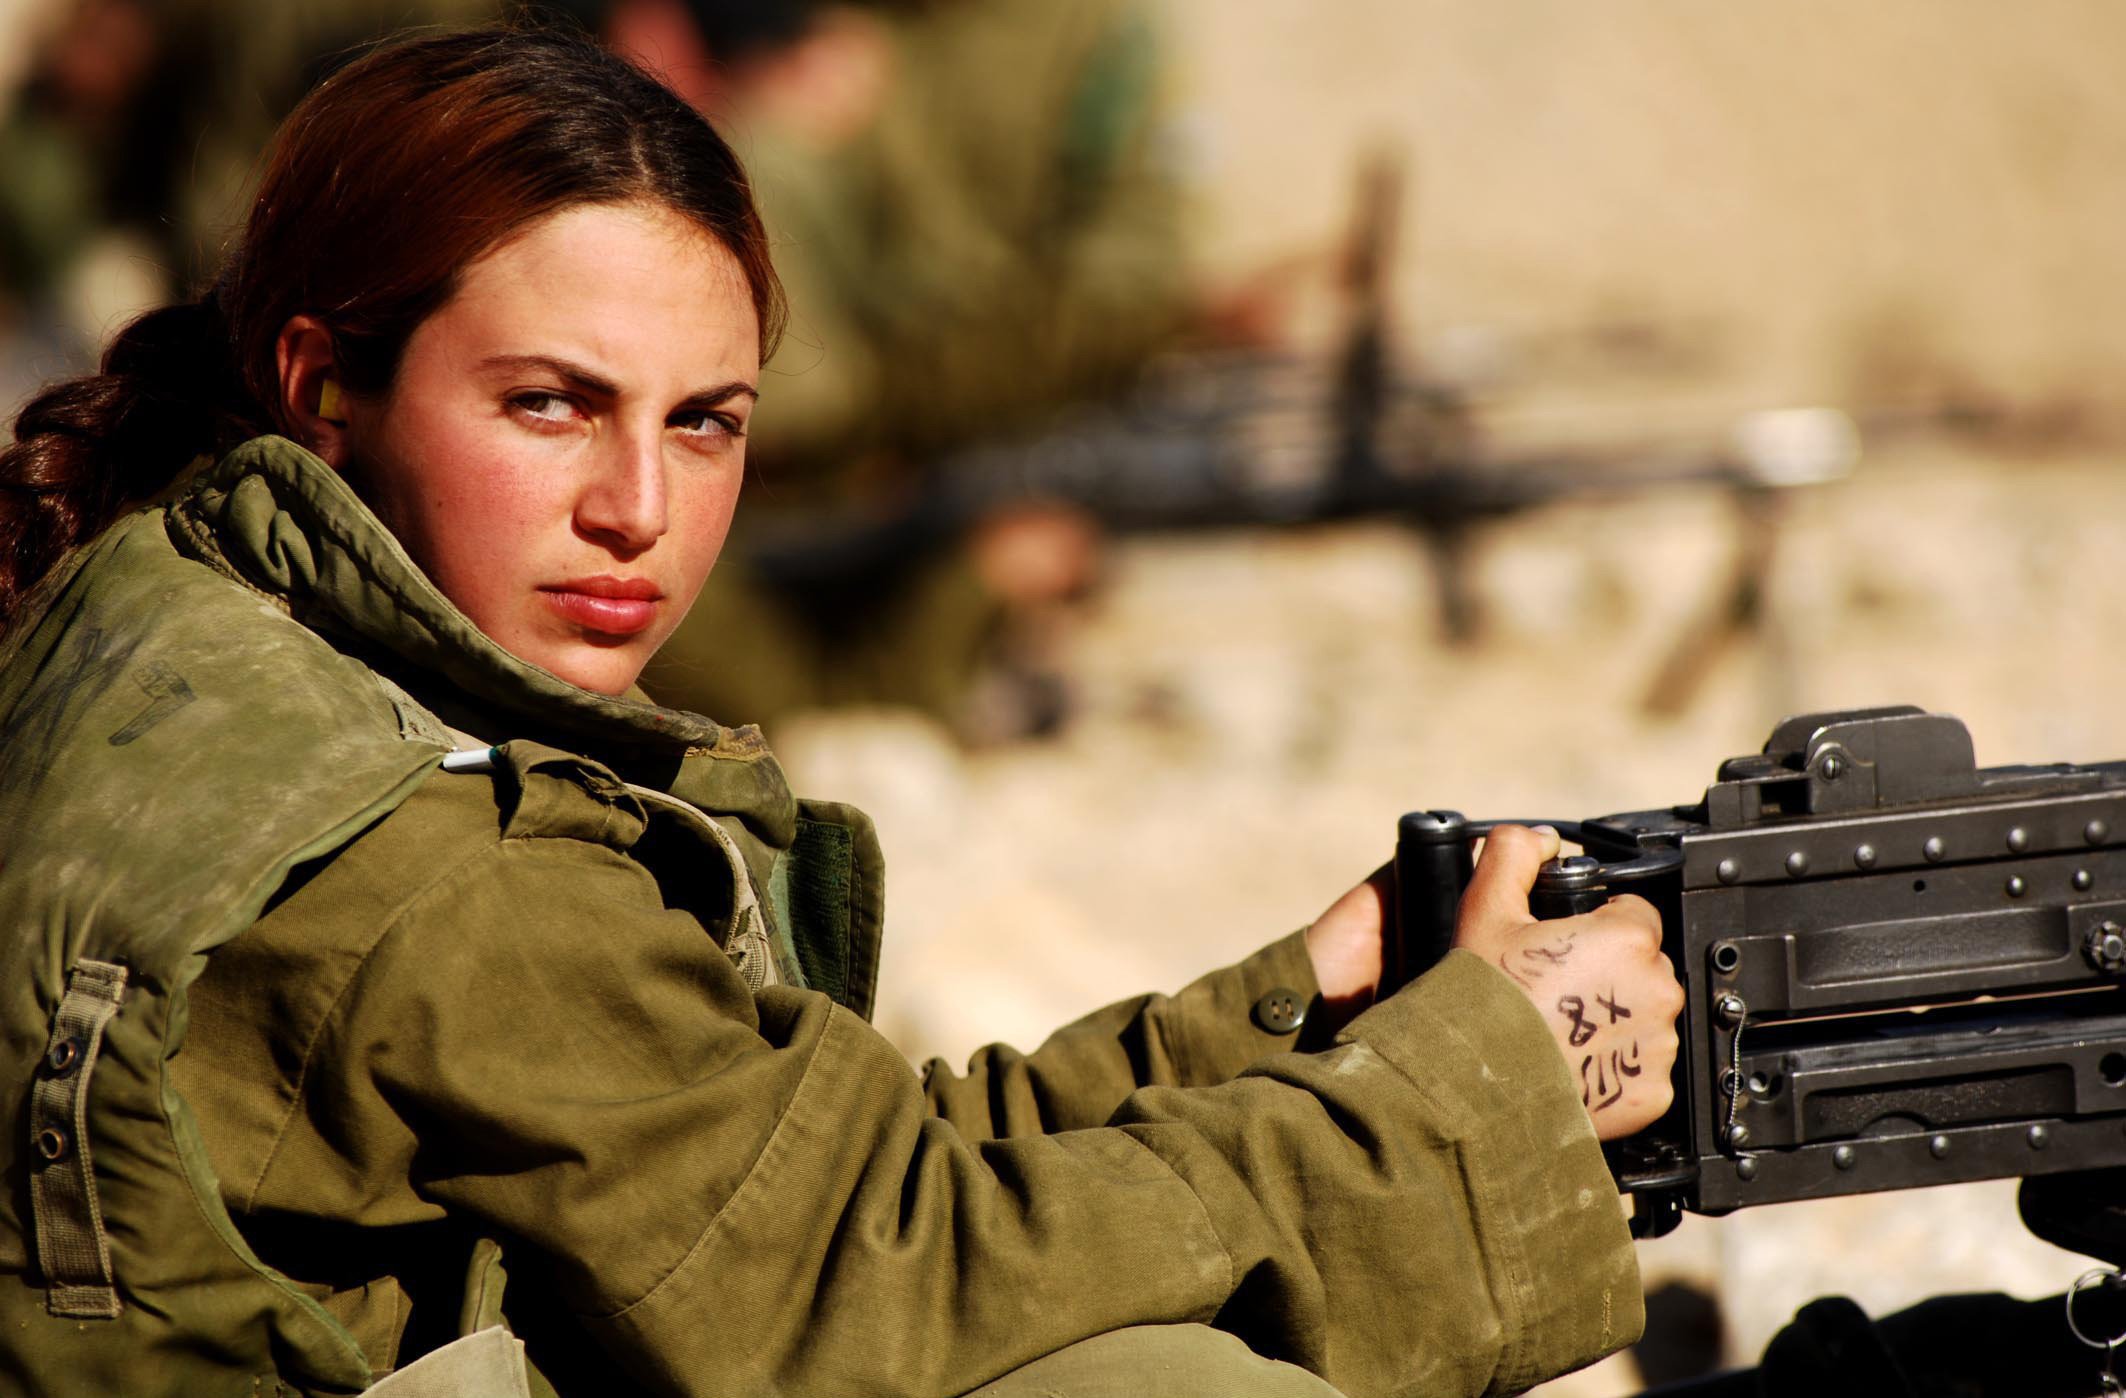 Армейская женщина. Даниэлла Кертес ЦАХАЛ. Галь Гадот в израильской армии. Галь Гадот в армии.